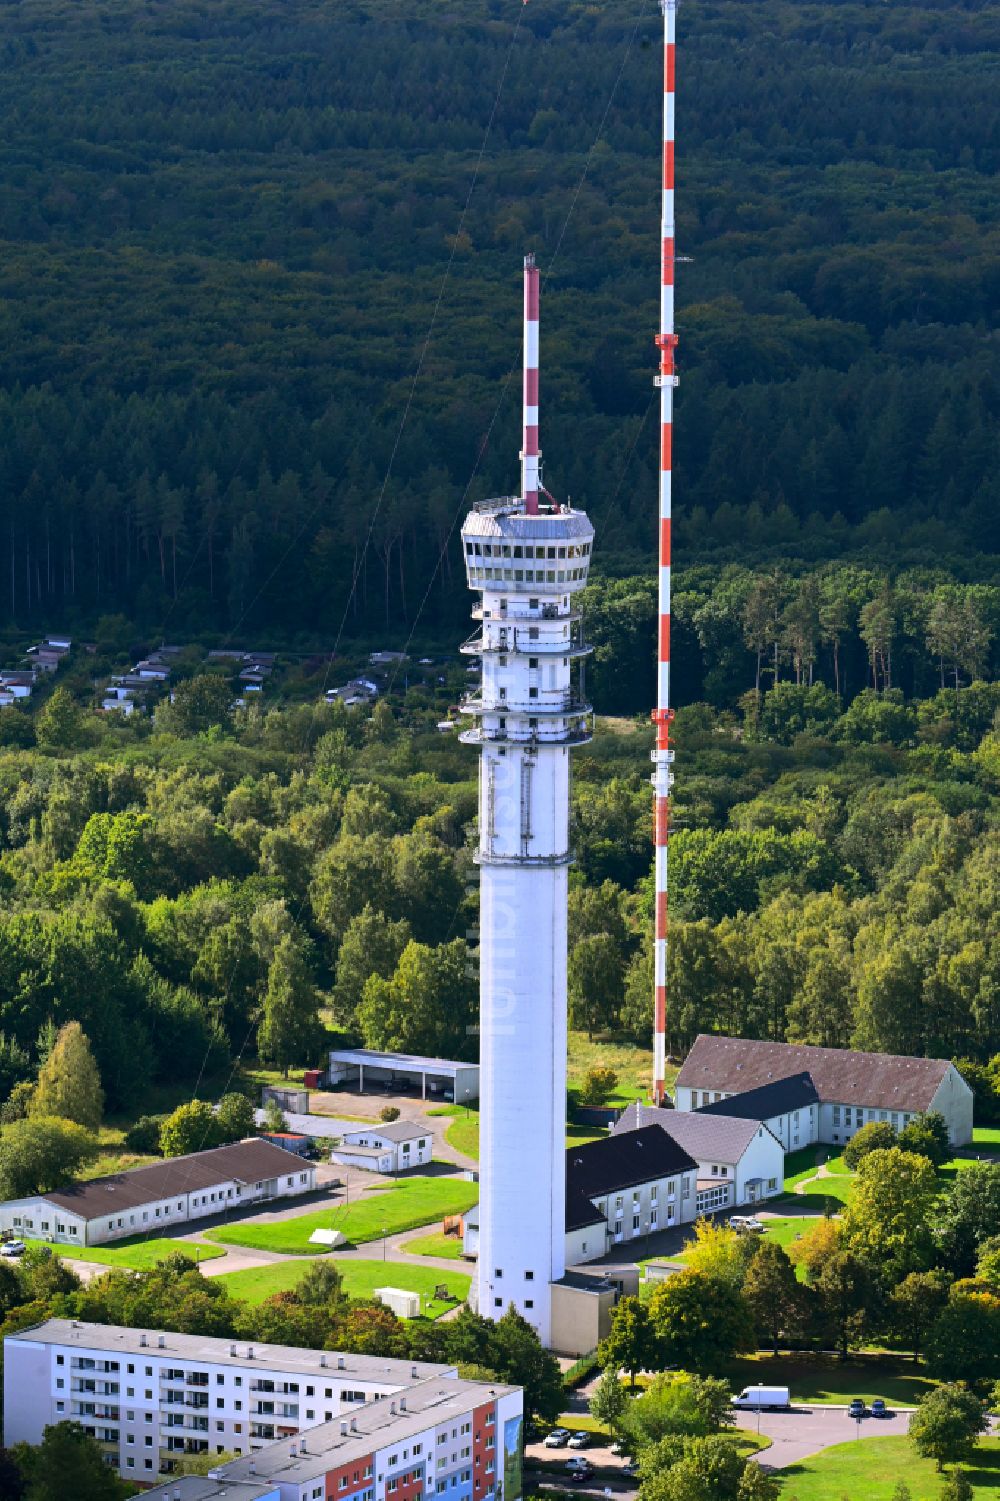 Luftbild Schwerin - Fernmeldeturm und Fernsehturm in Schwerin im Bundesland Mecklenburg-Vorpommern, Deutschland